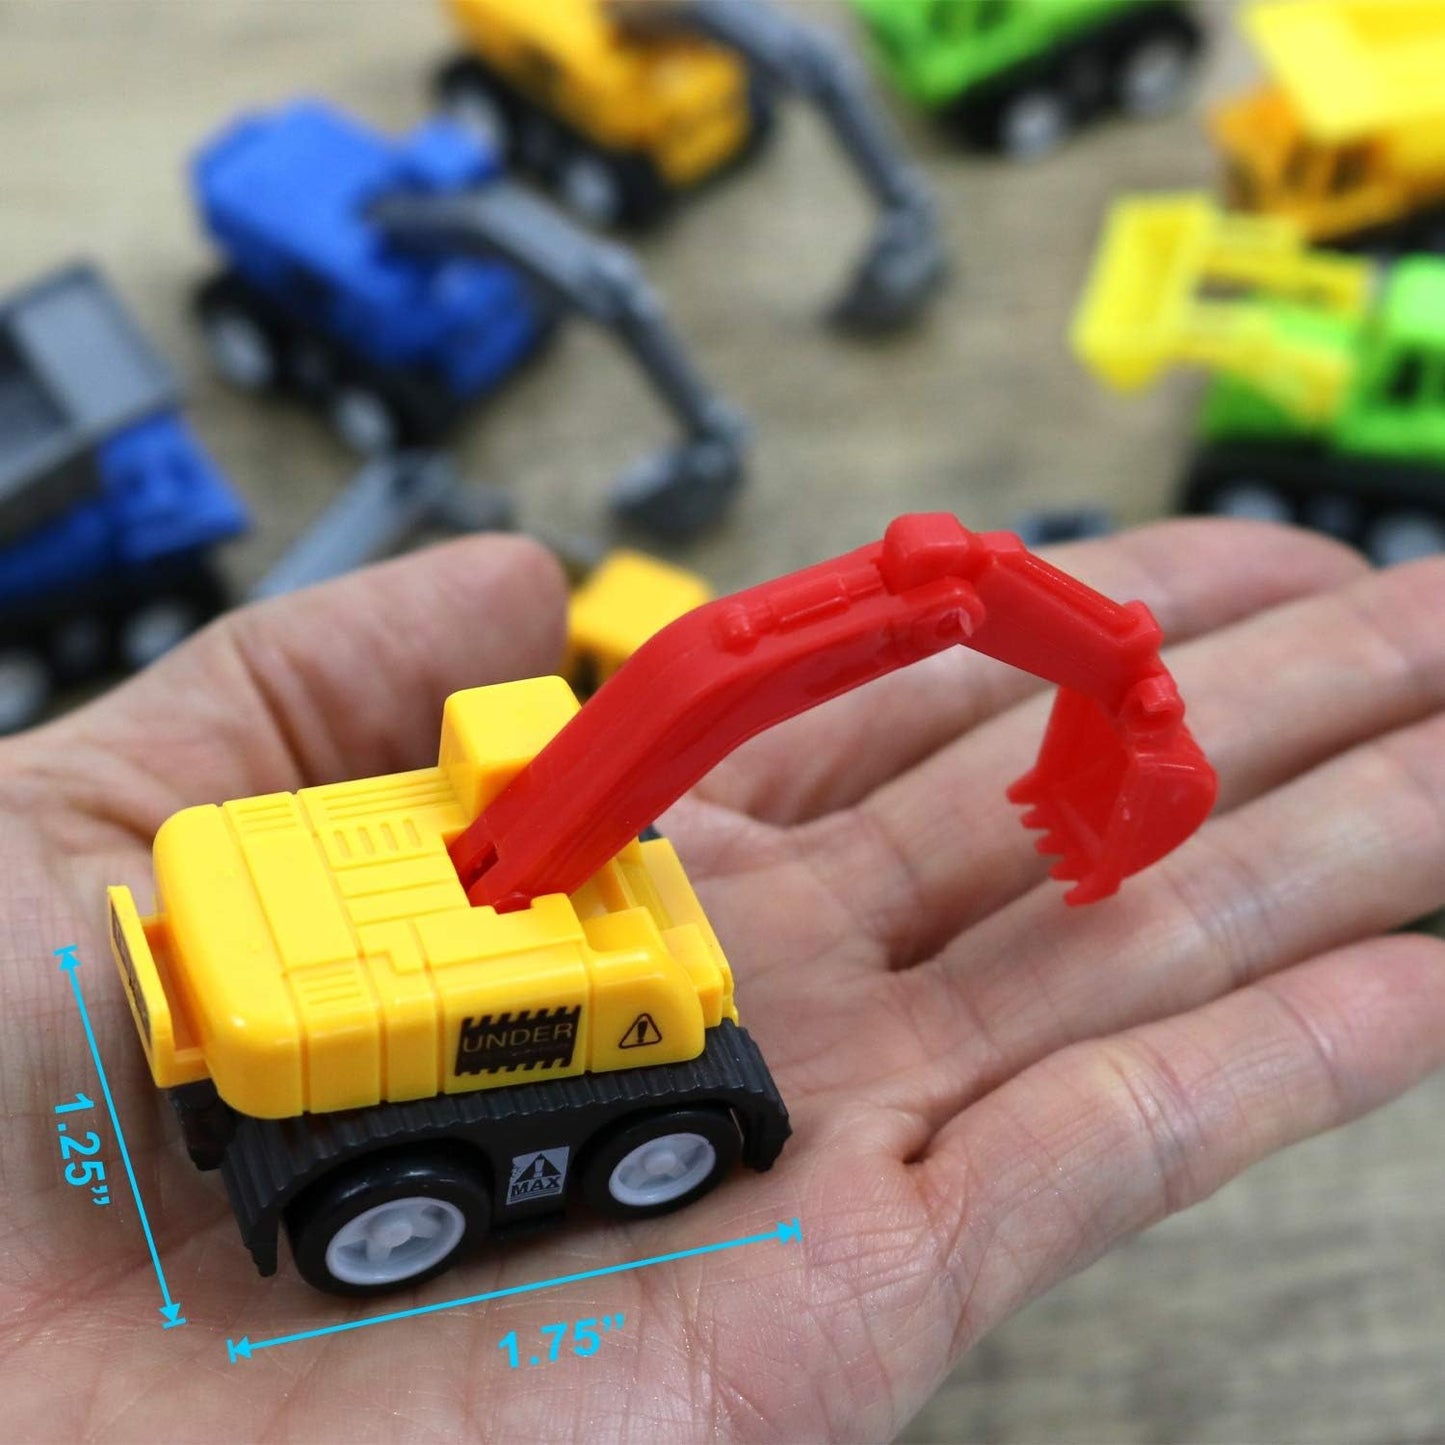 GIFTEXPRESS Mini coches de juguete de construcción extraíbles (paquete de 12) 